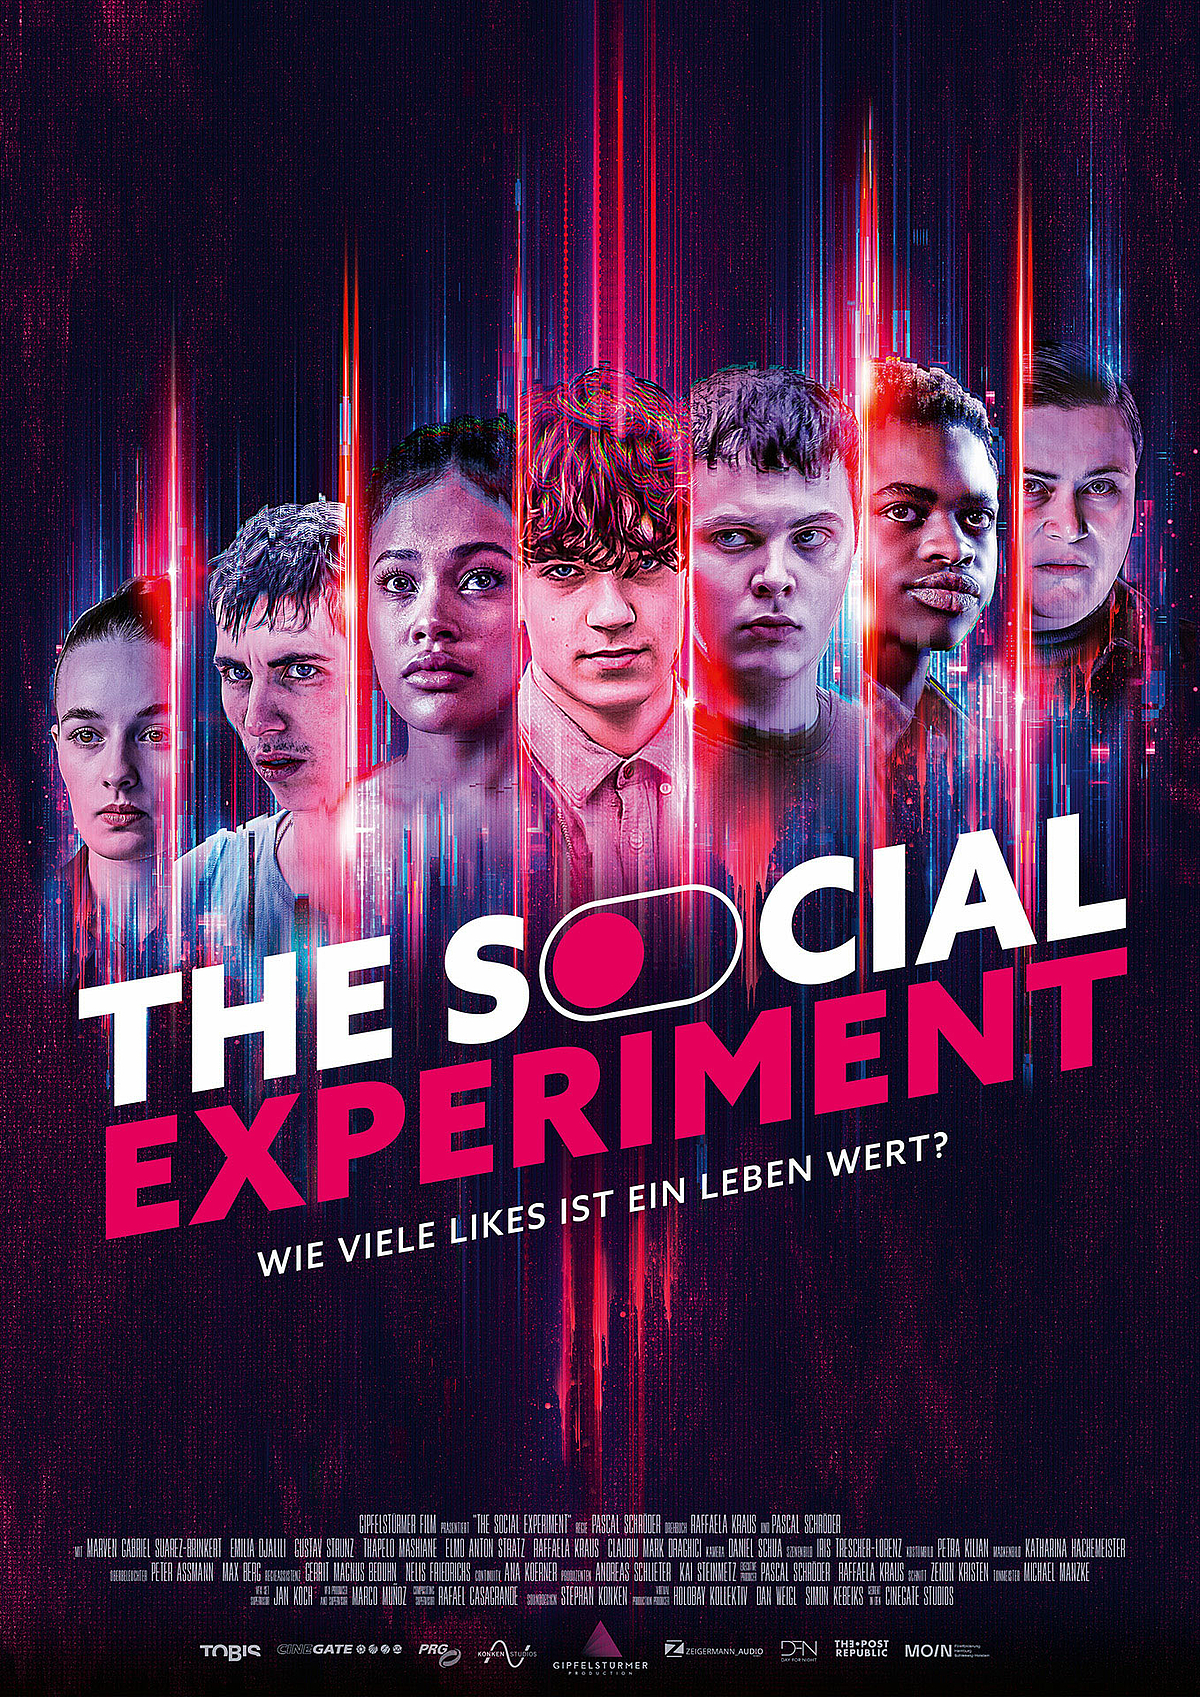 Filmplakat mit dem Schriftzg "The Social Experiment" und fünf jugendlichen und zwei erwachsenen Personen.